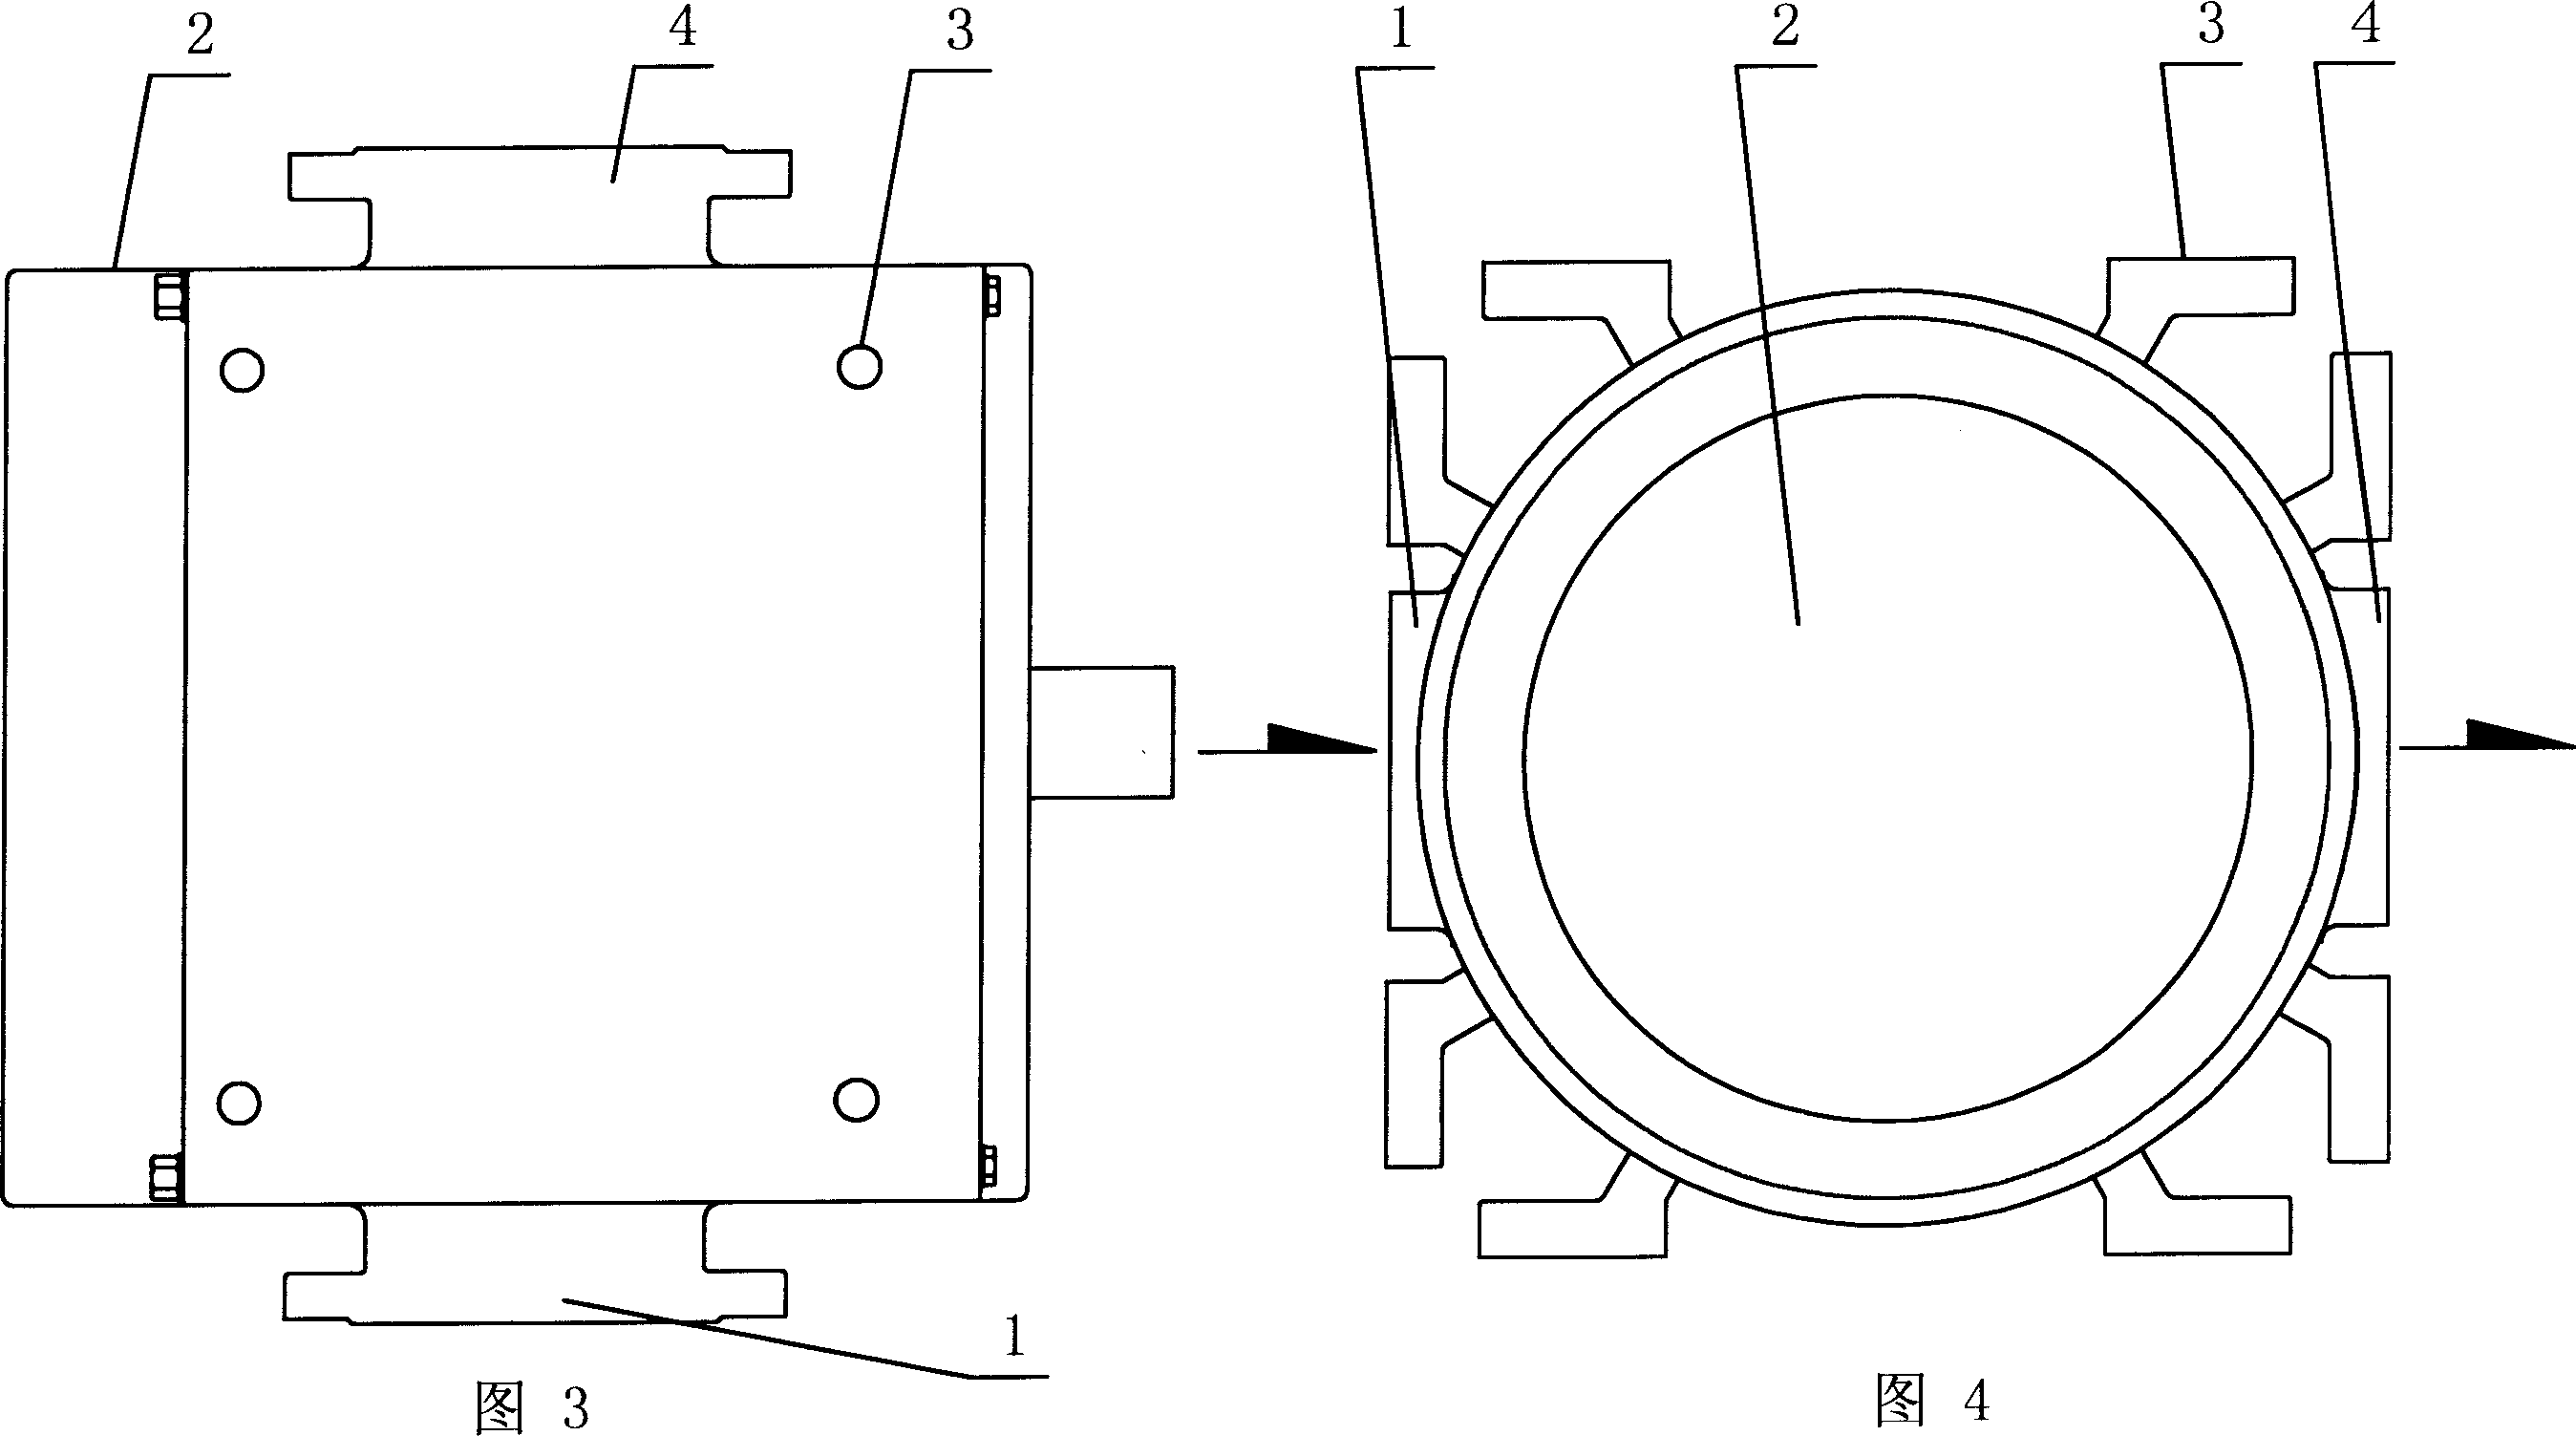 External loop type rotary piston pump